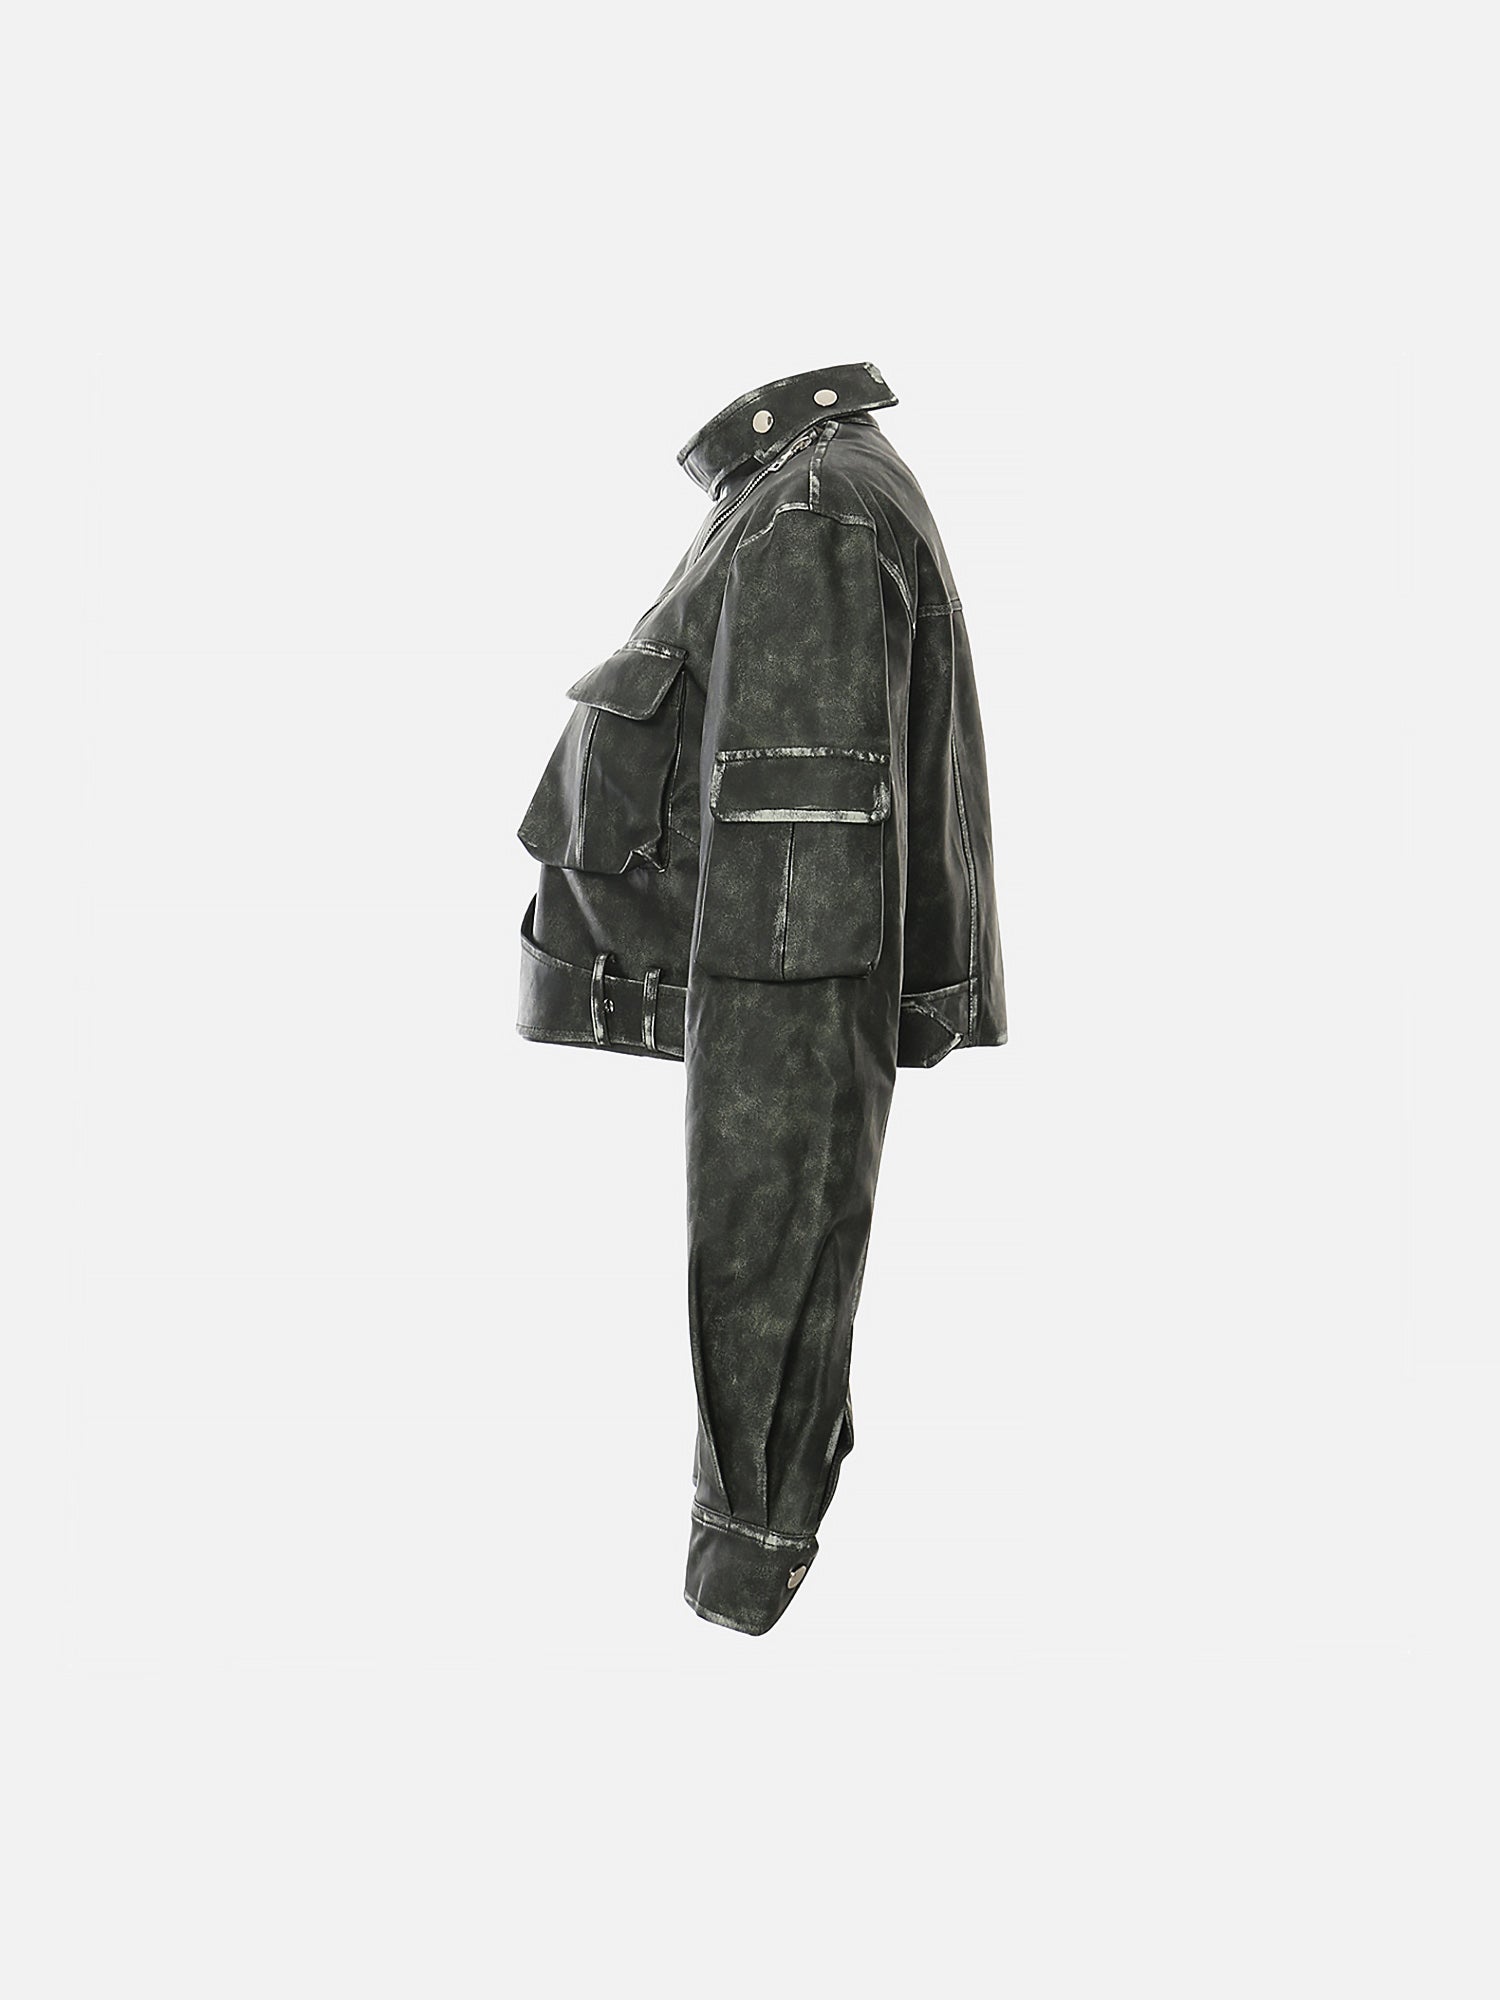 Thesupermade Personalized Irregular Cut Polished Leather Jacket - 2008